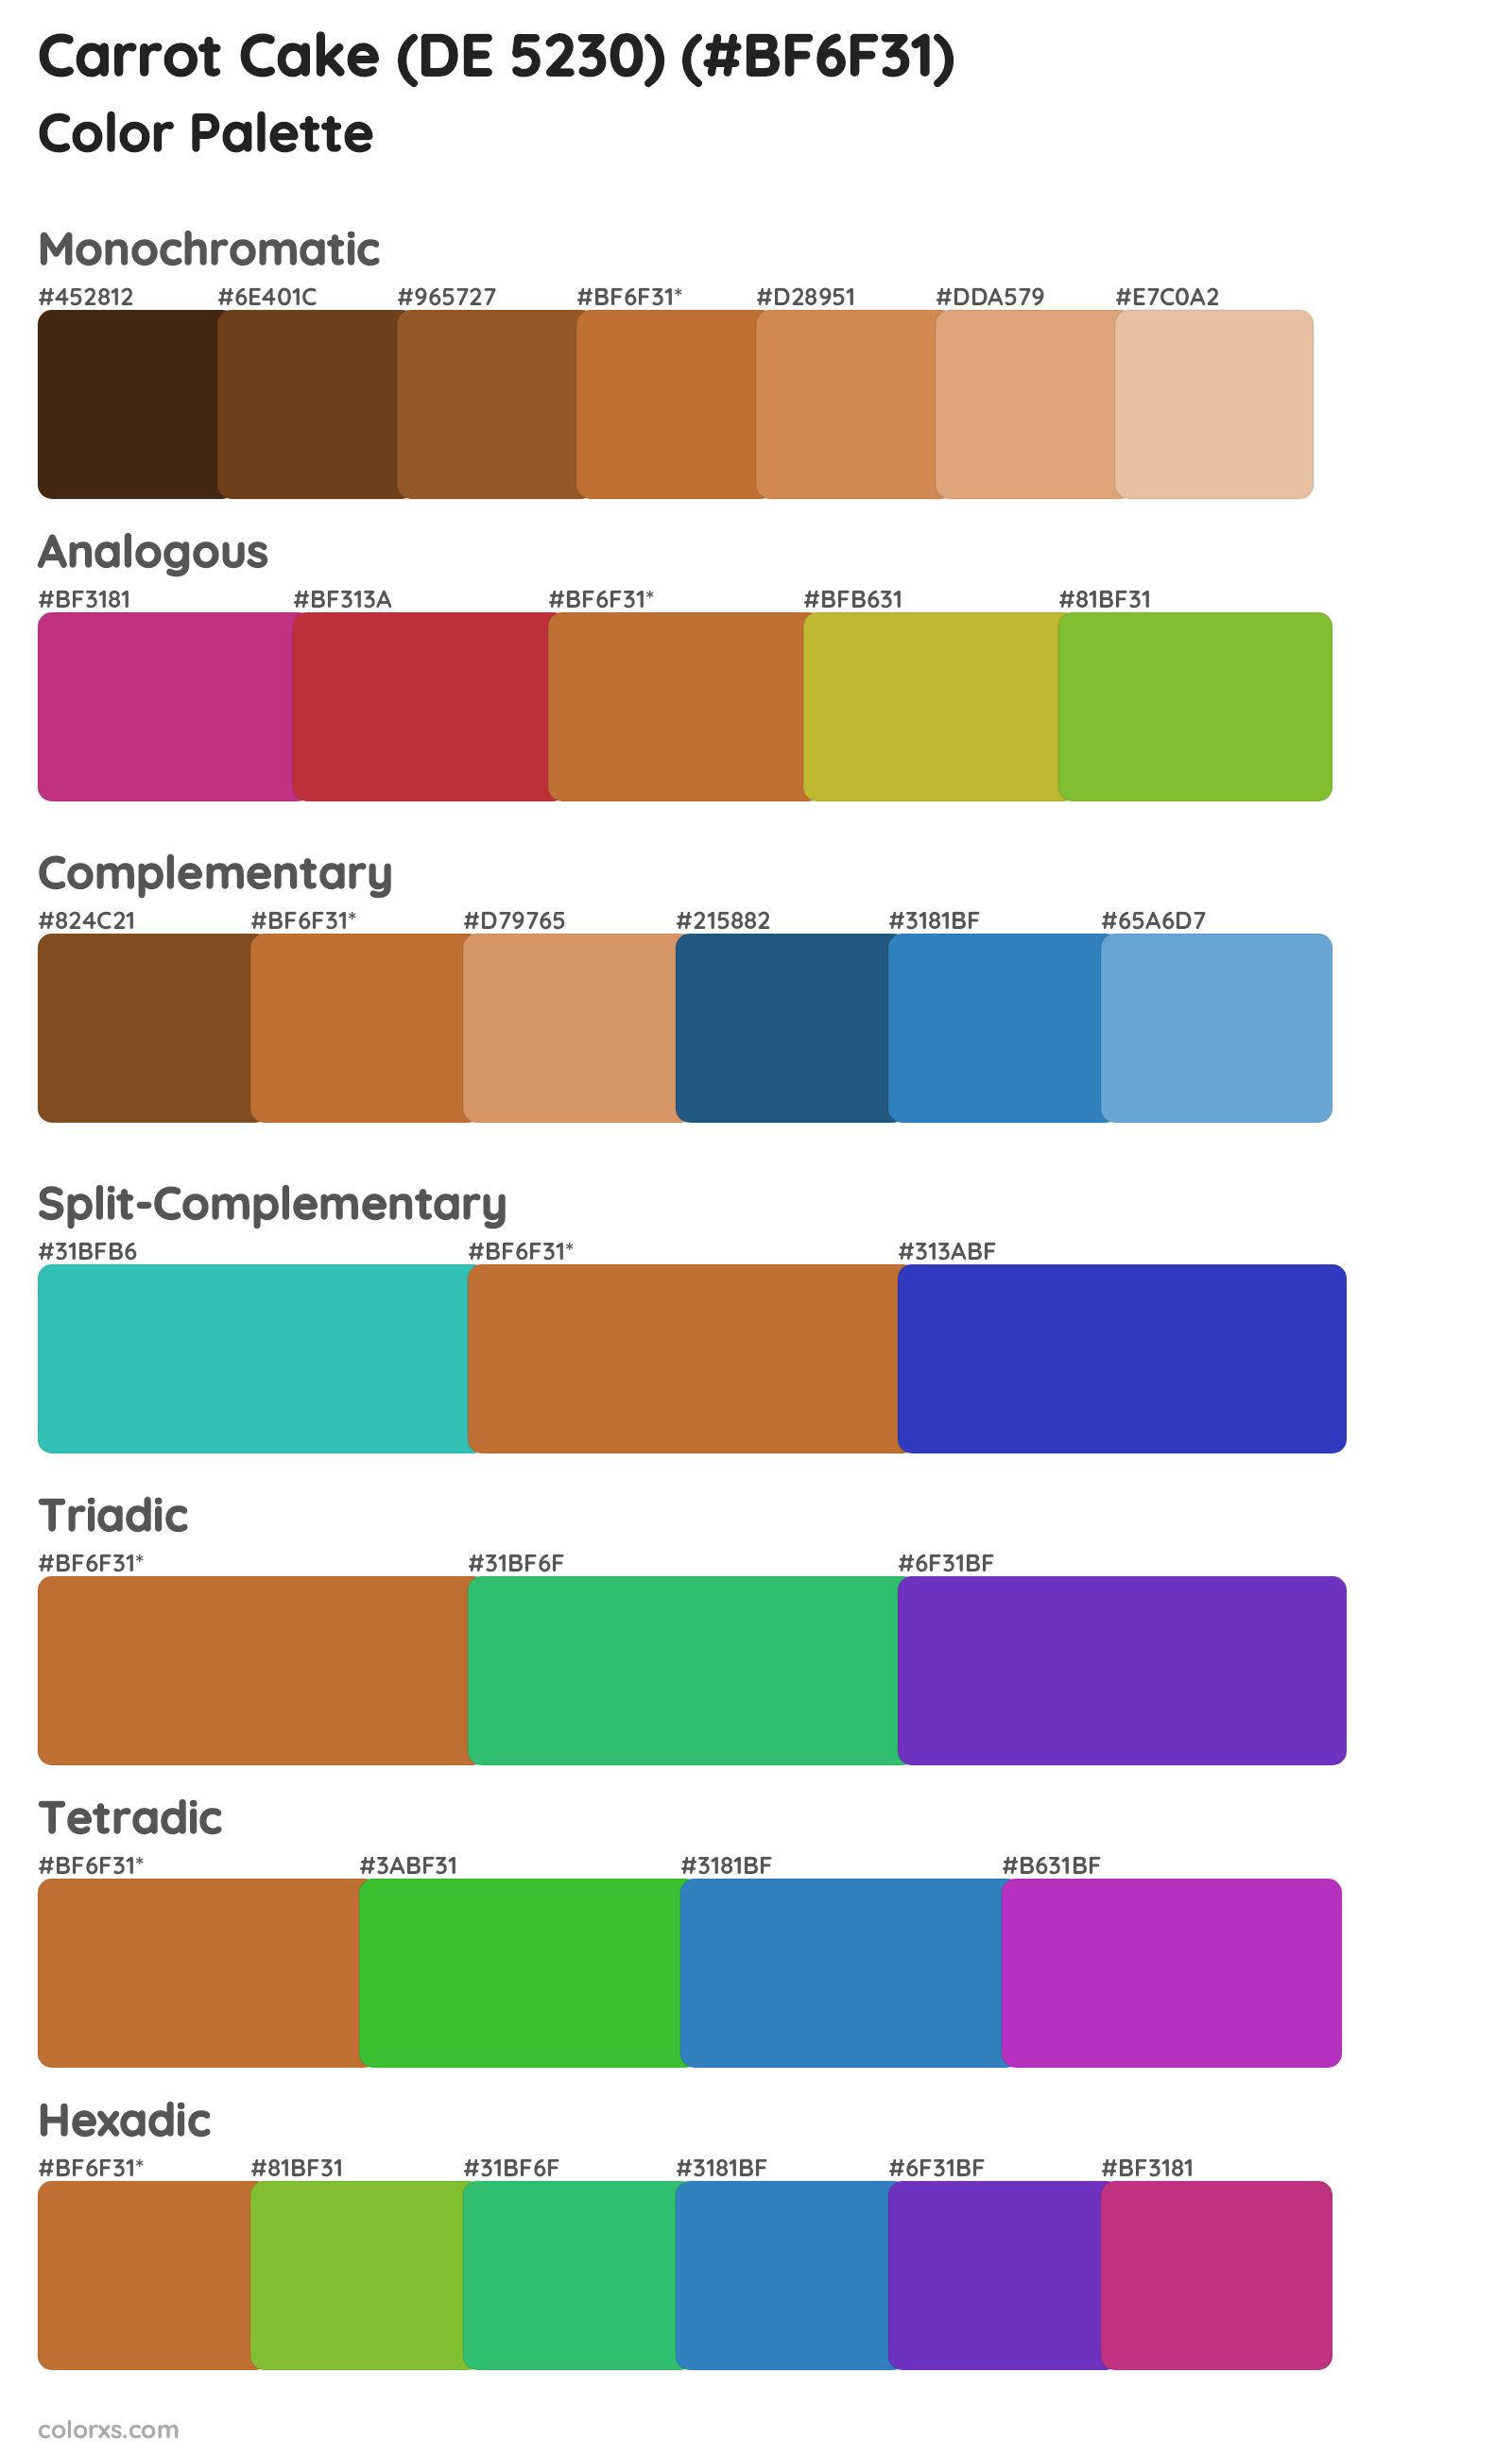 Carrot Cake (DE 5230) Color Scheme Palettes